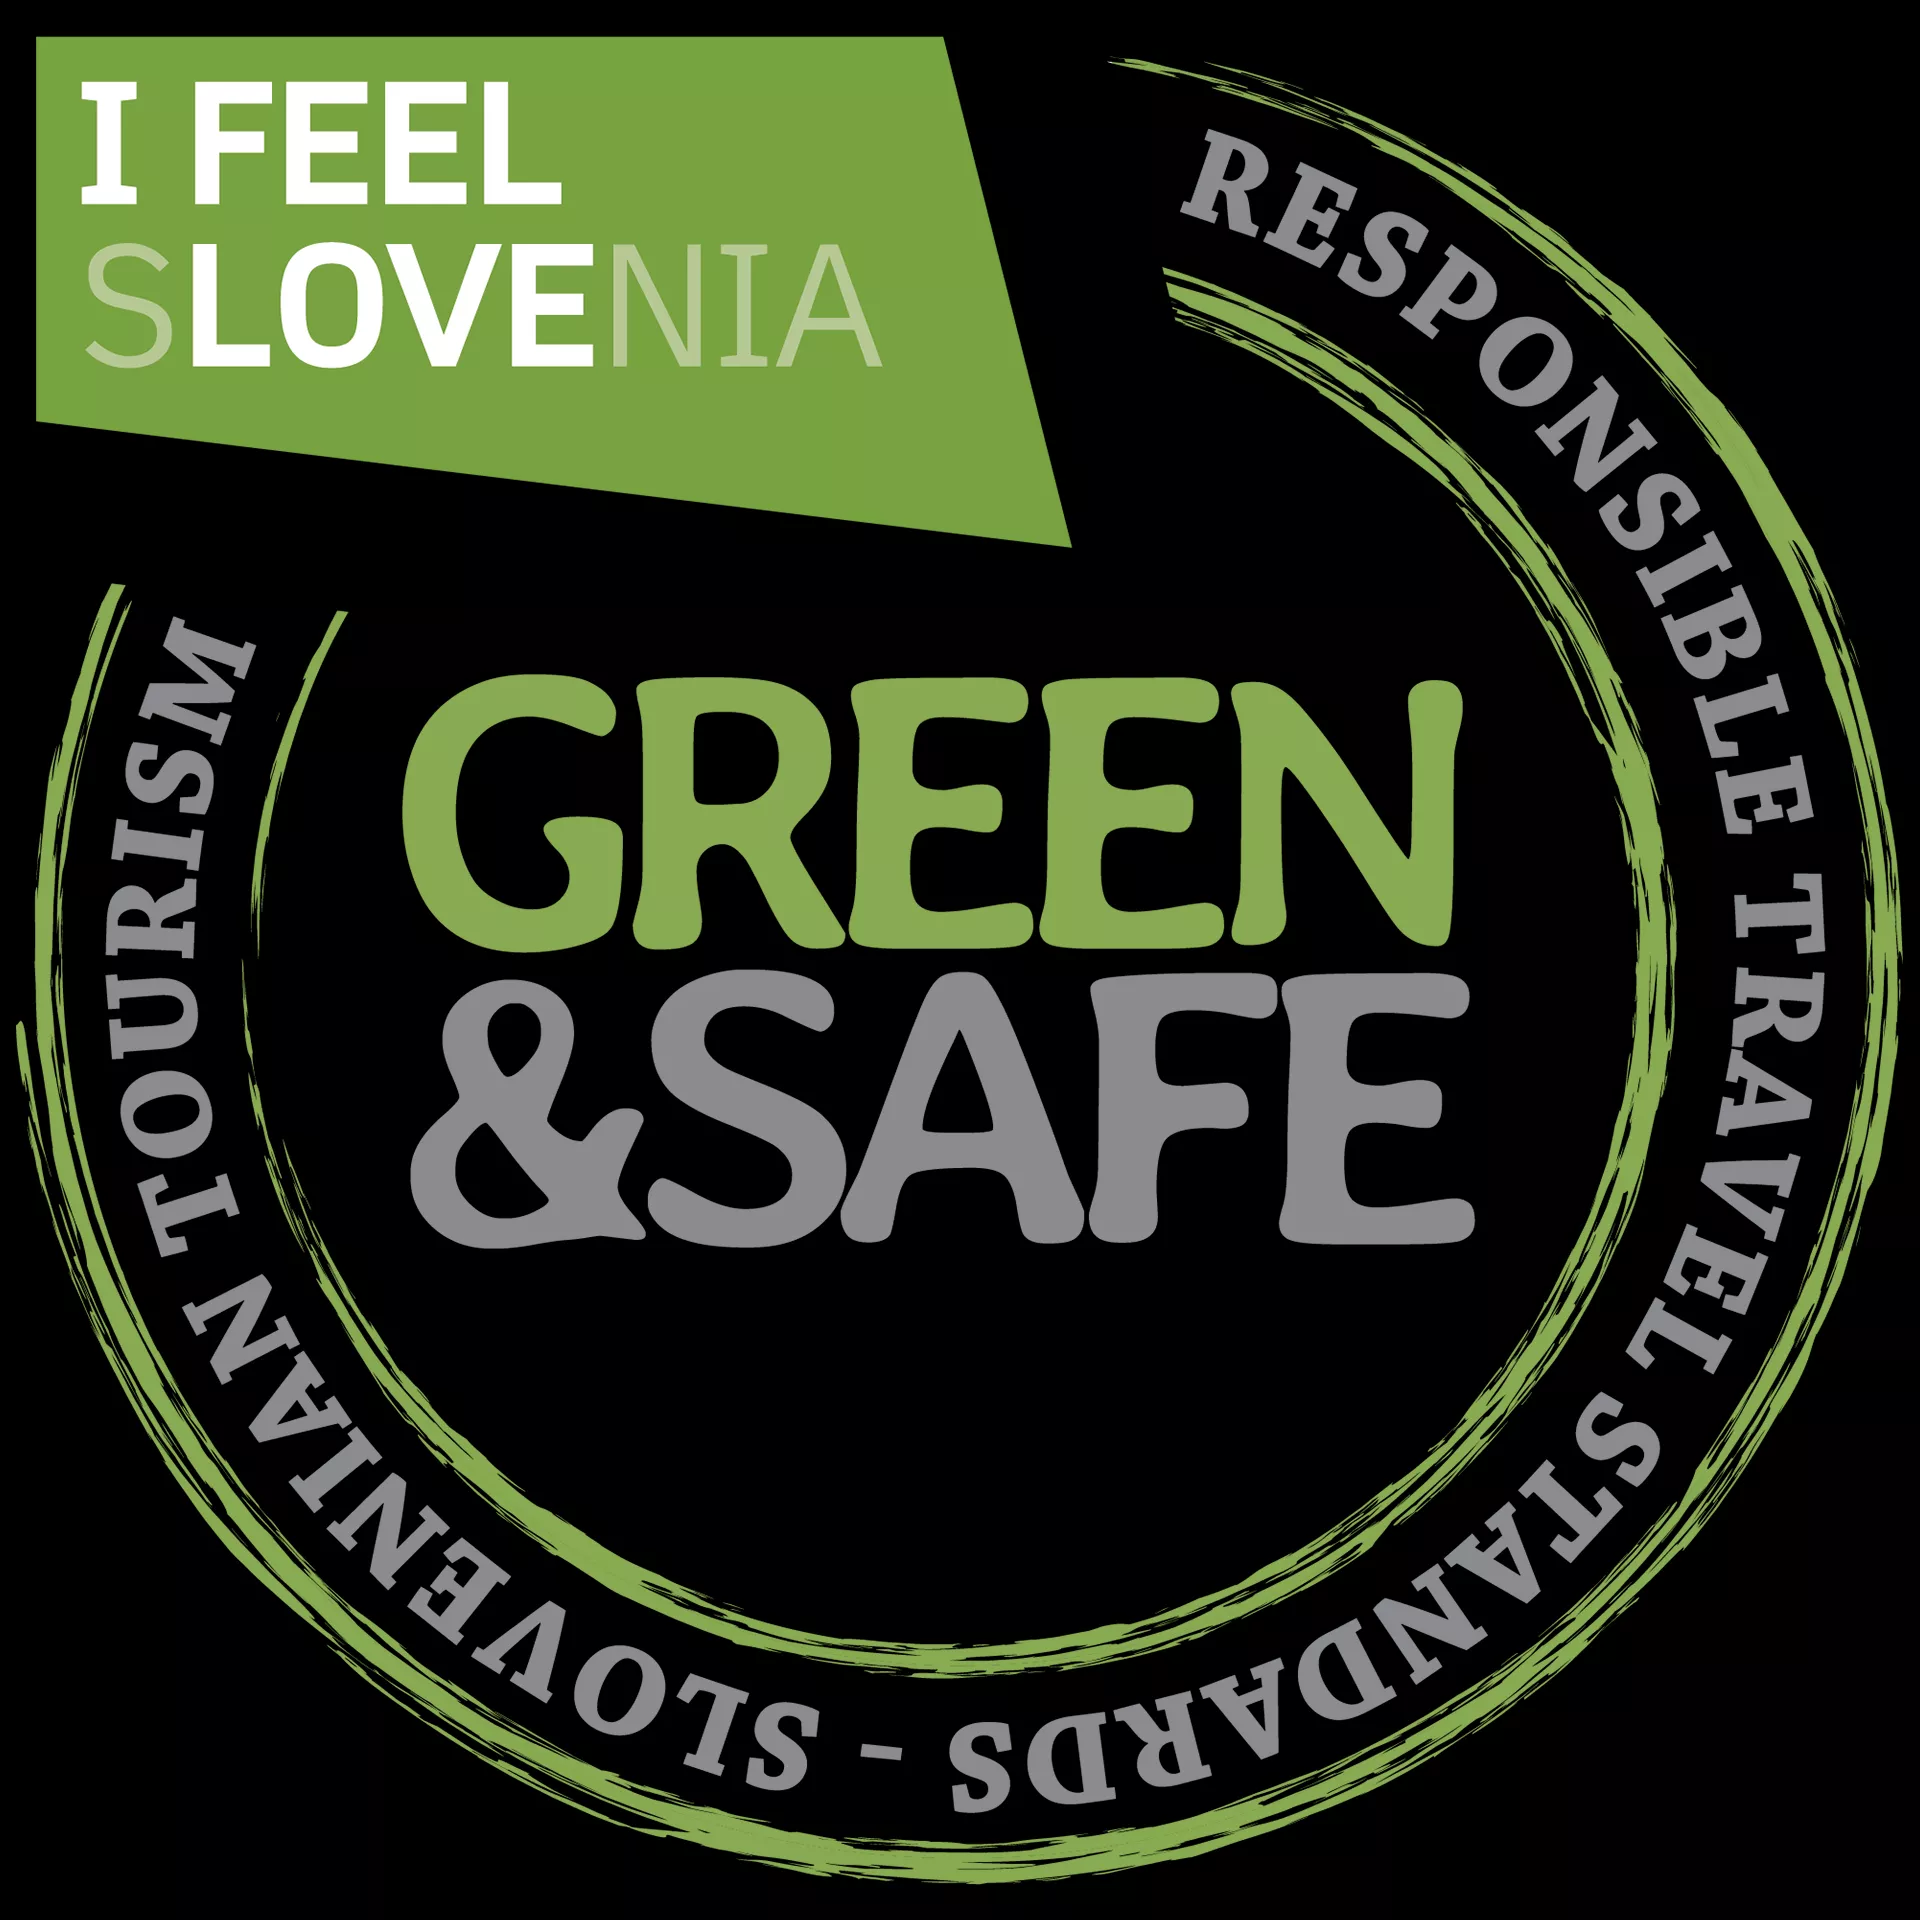 Slovenia Green & Safe